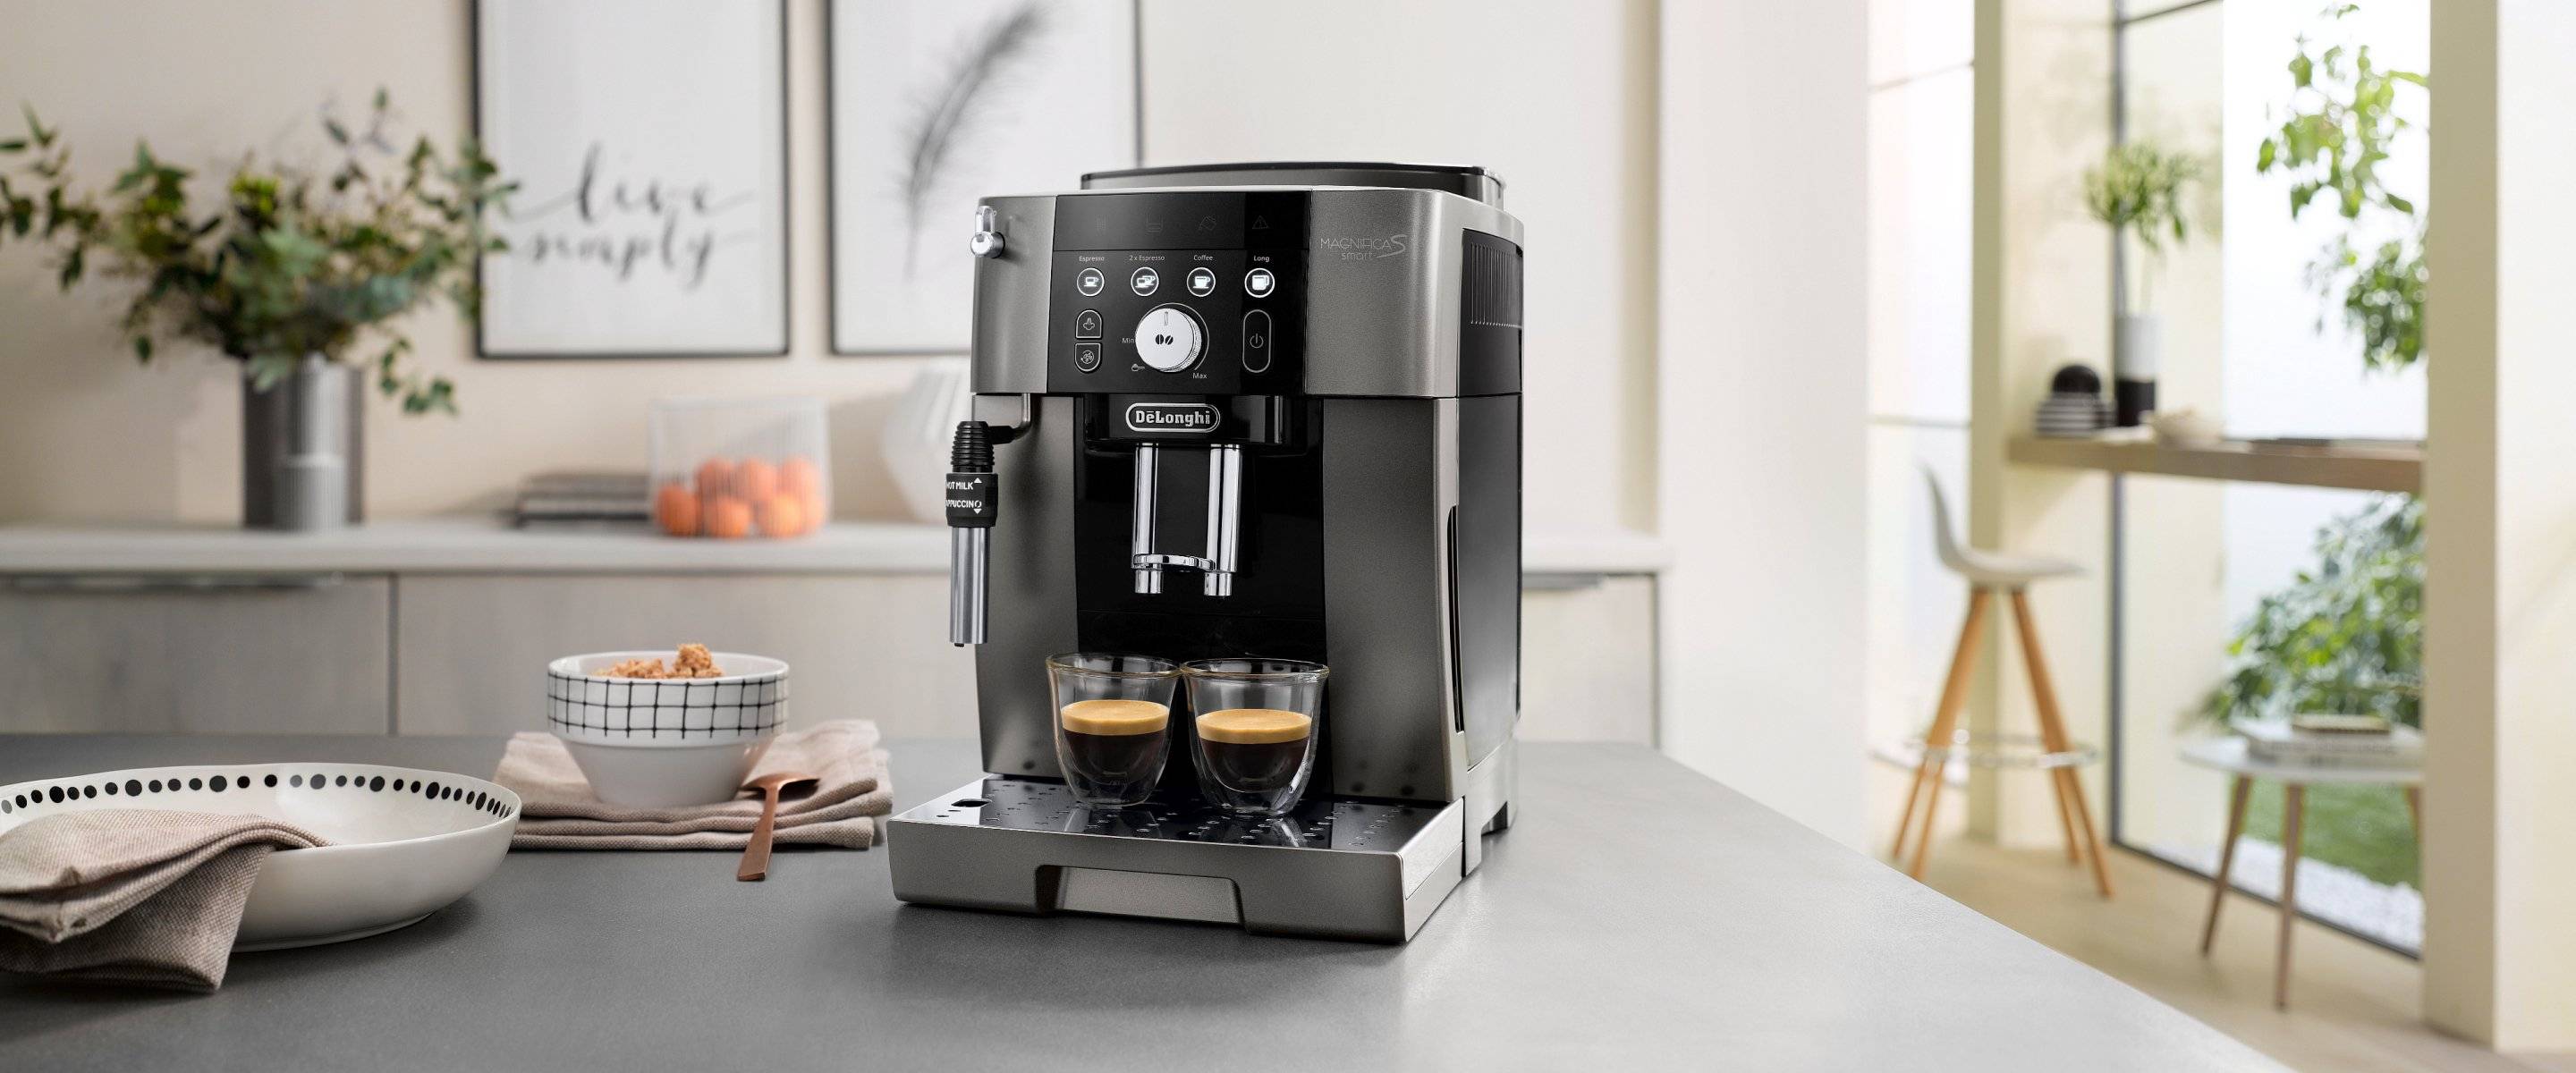 Топ-16 лучших кофемашин delonghi: рейтинг 2020-2021 года и обзор рожковых, капсульных, капельных и автоматически моделей с капучинатором